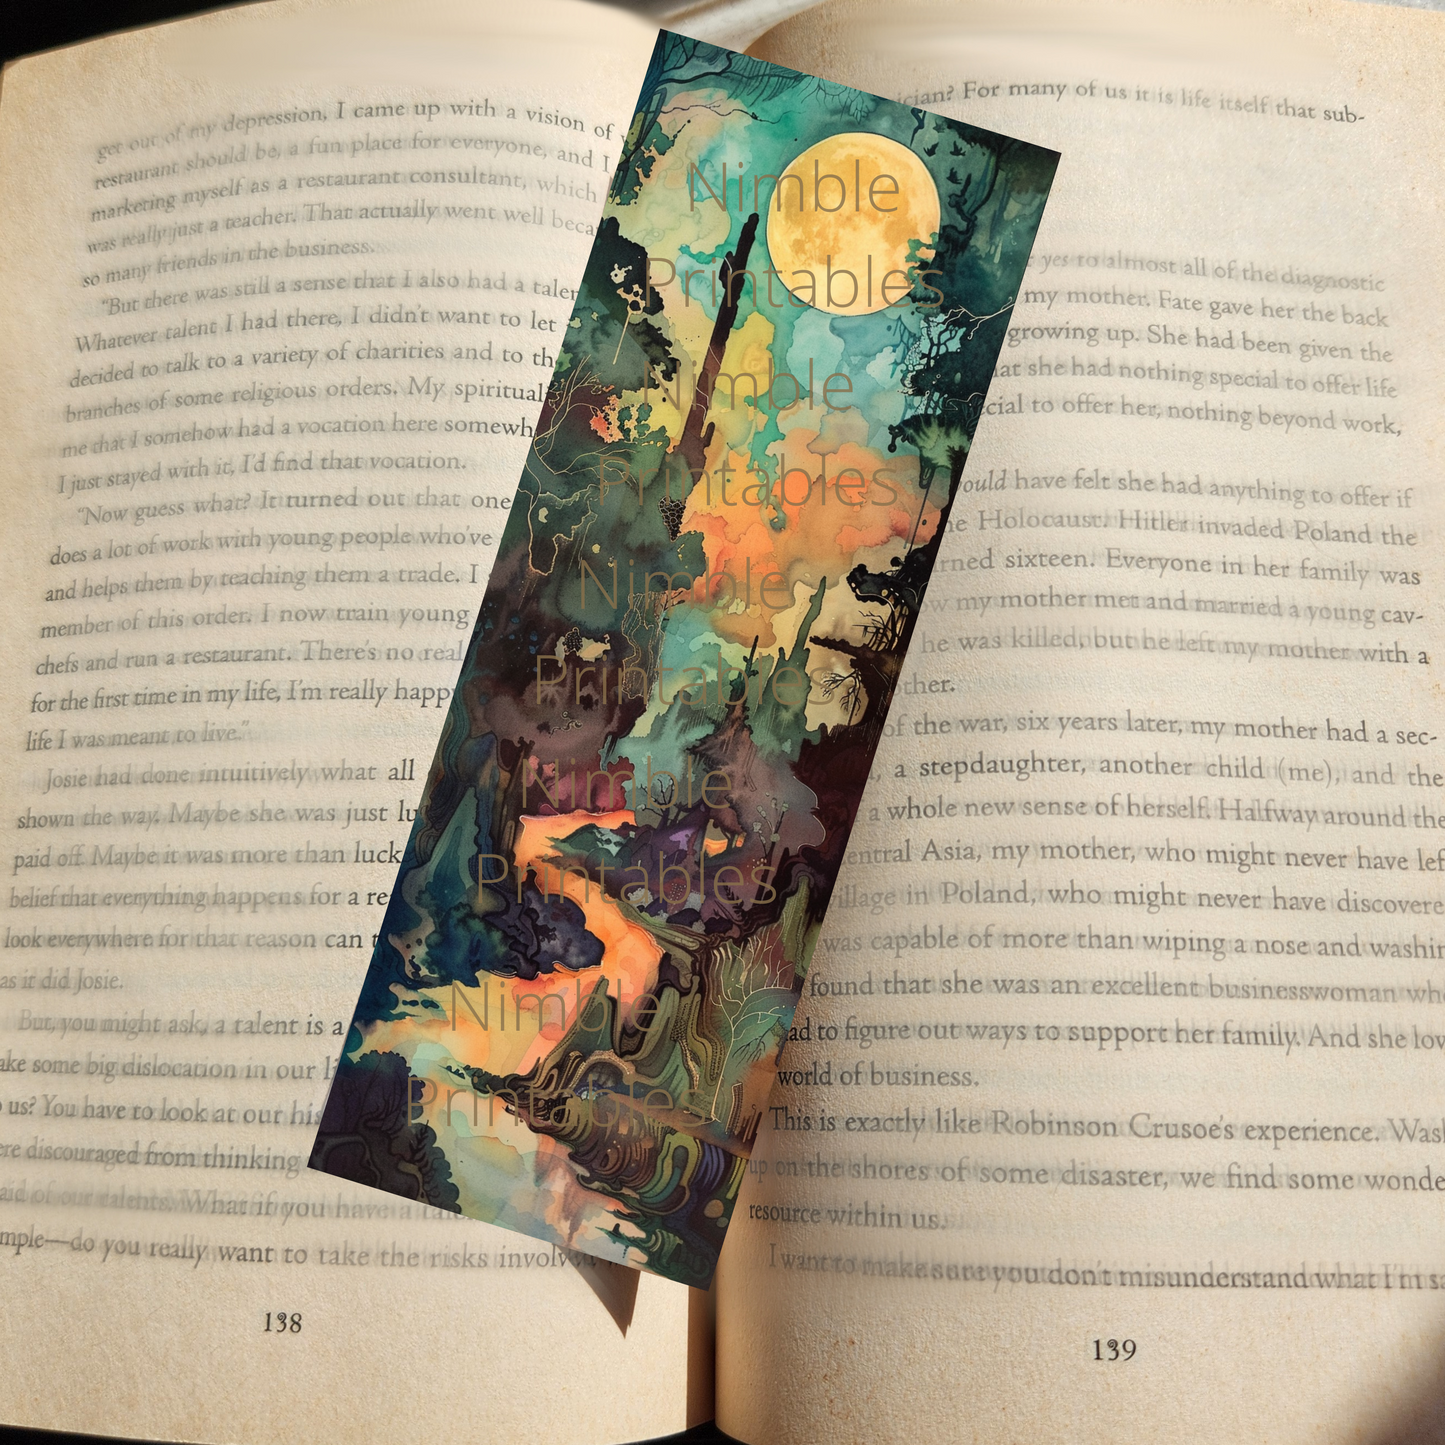 Printable Bookmarks Bundle Landscape Print, Digital Downloads, Watercolor Bookmark, 40 PNG and 40 JPG Bookmark Sublimation